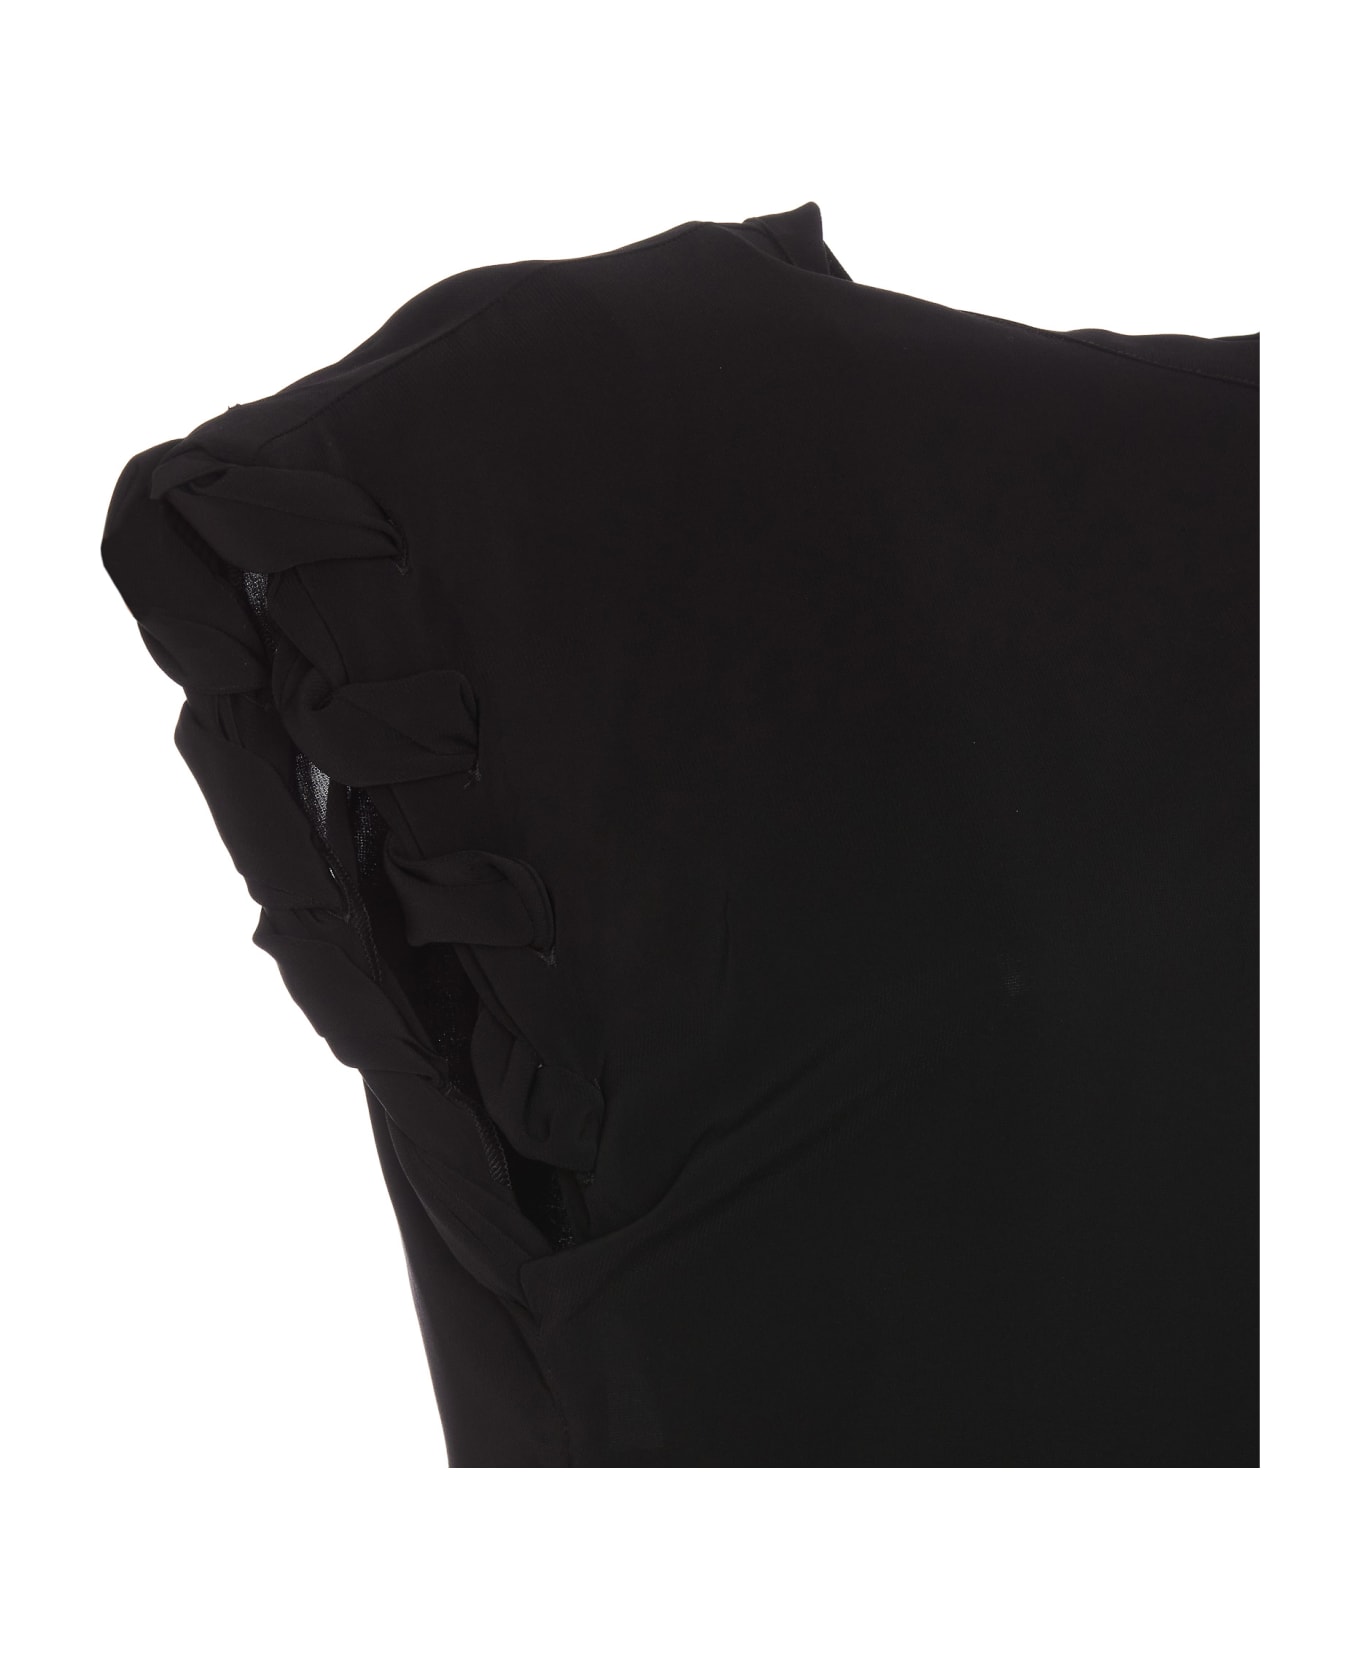 Pinko Tindaro Shirt - Black